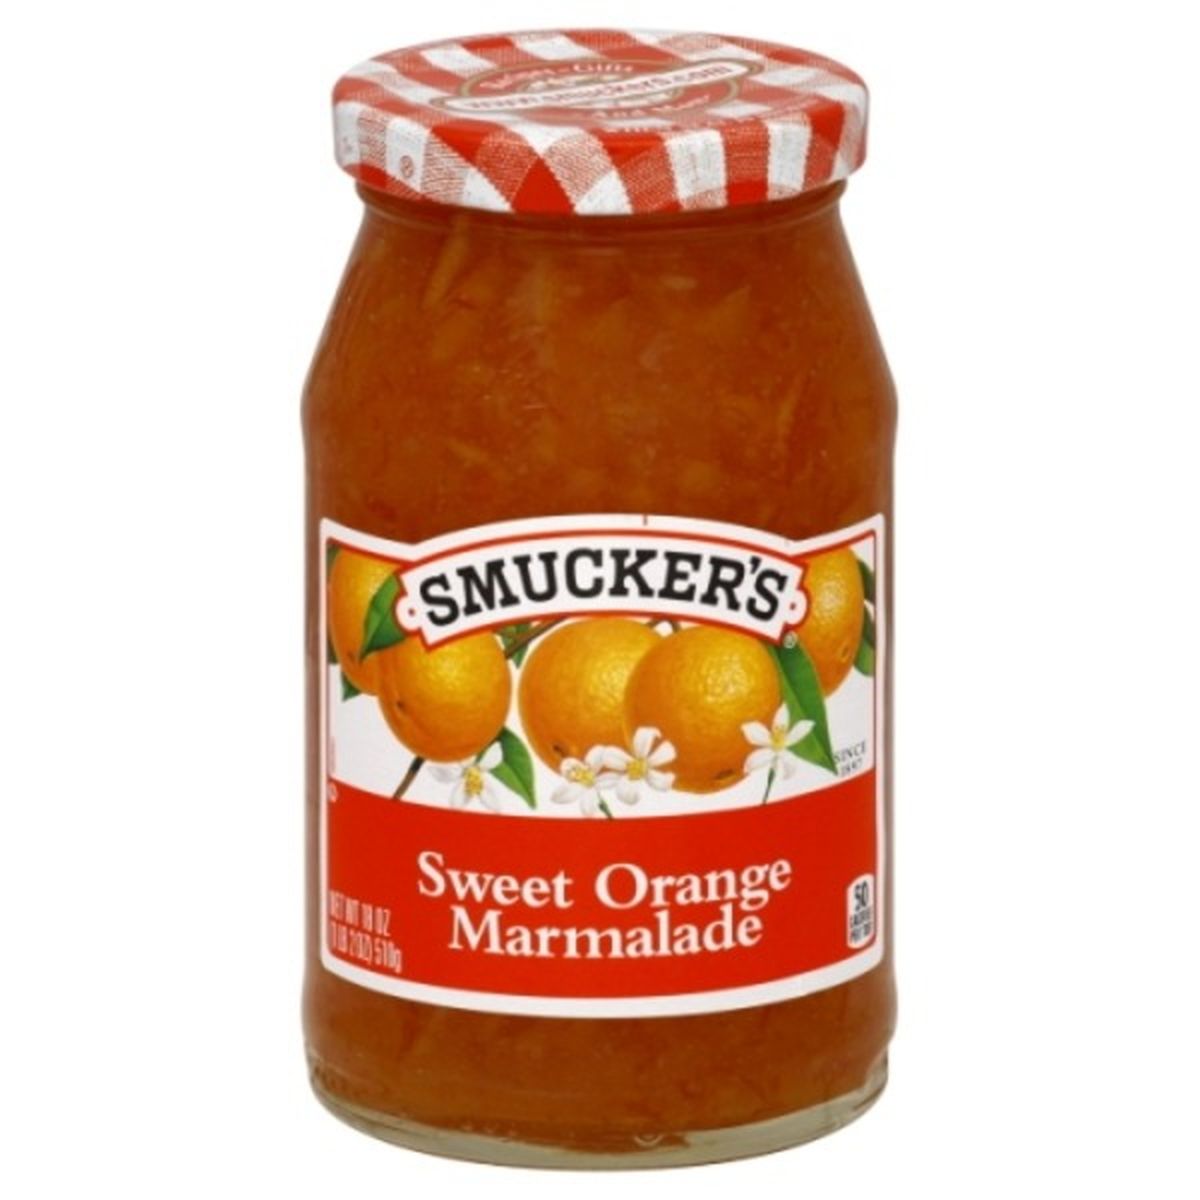 Calories in Smucker's Marmalade, Sweet Orange